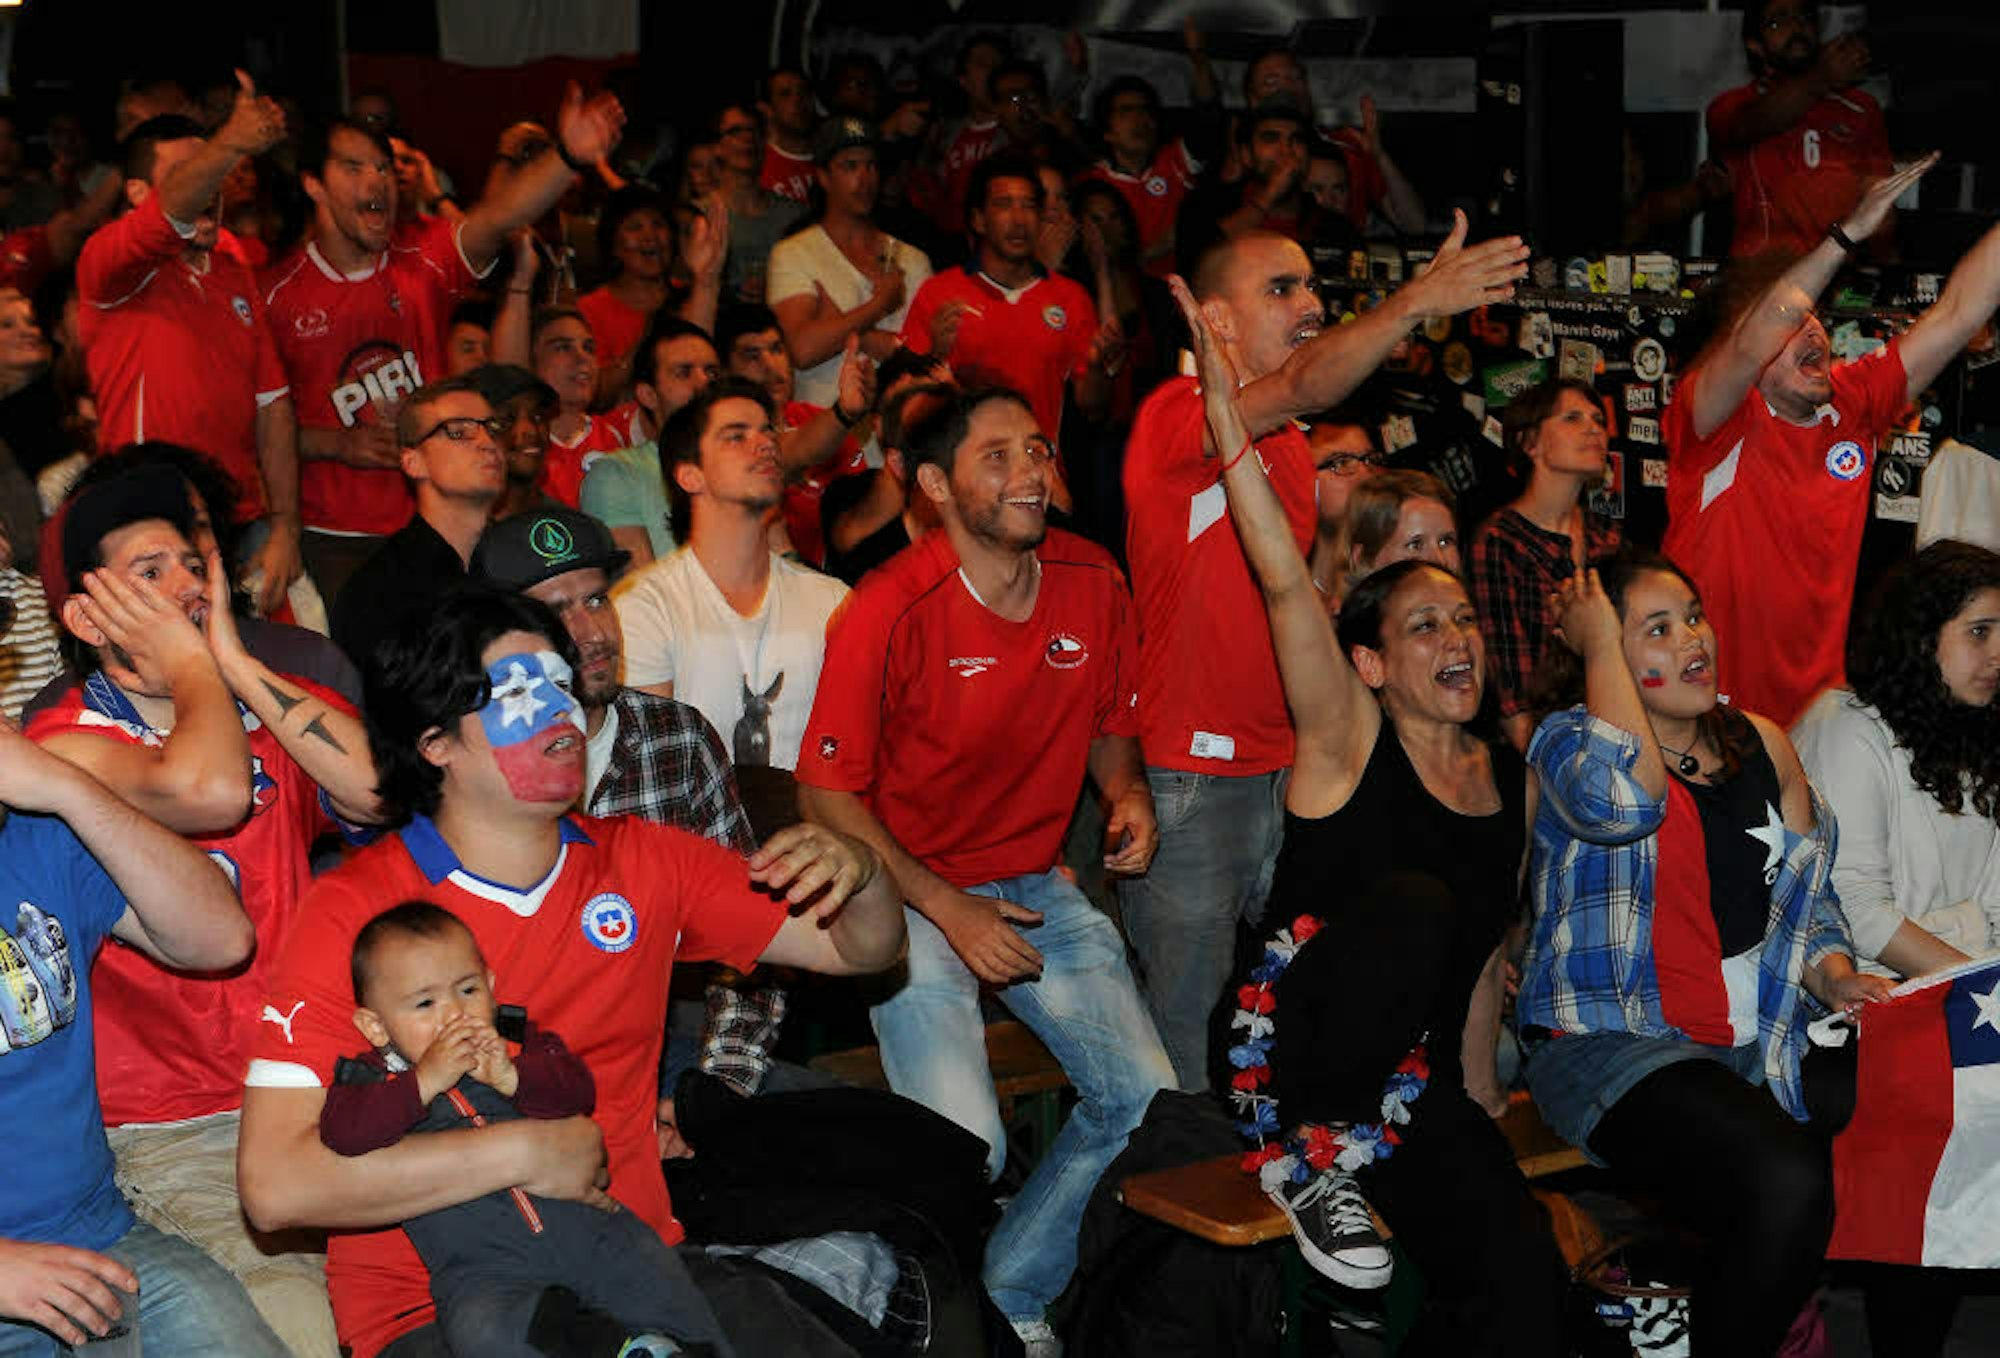 Public Viewing im Club Bahnhof Ehrenfeld während der WM 2014. Chilenische Fans schauen das Spiel gegen Brasilien.